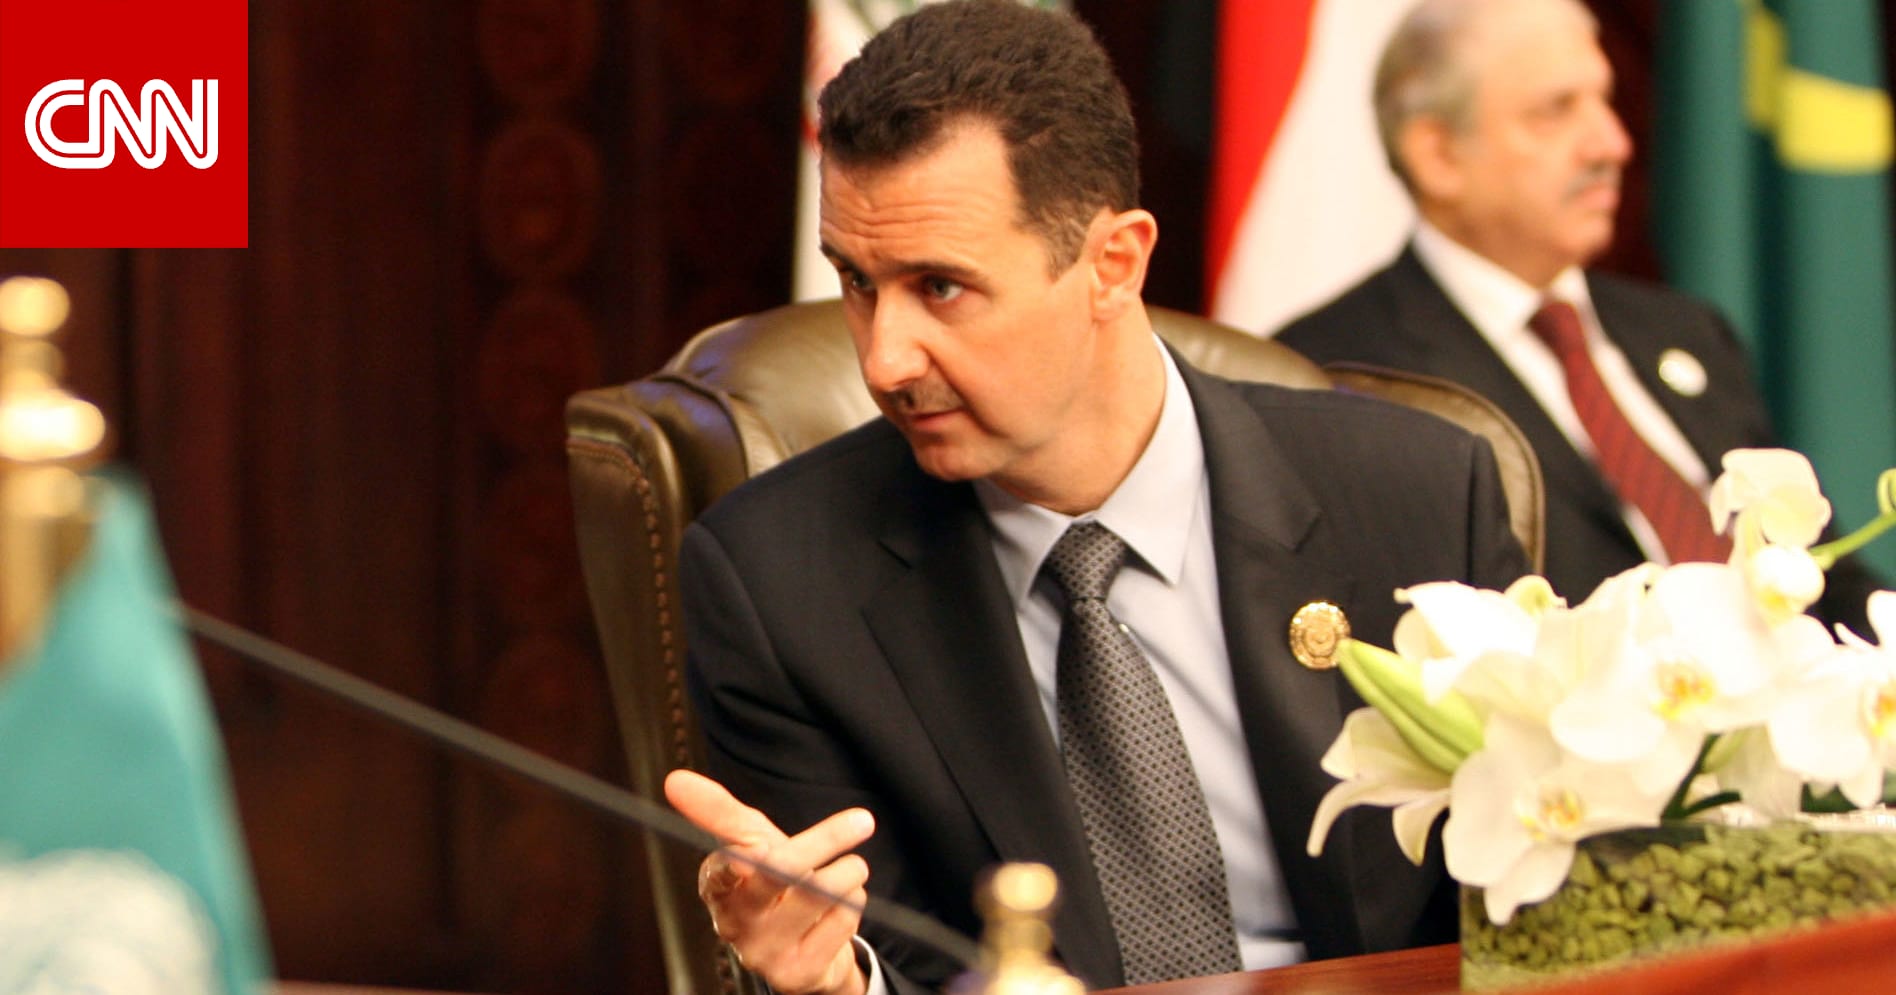 تقرير رسمي يوضح سبب عدم إلقاء بشار الأسد كلمة في القمة العربية وسط تفاعل